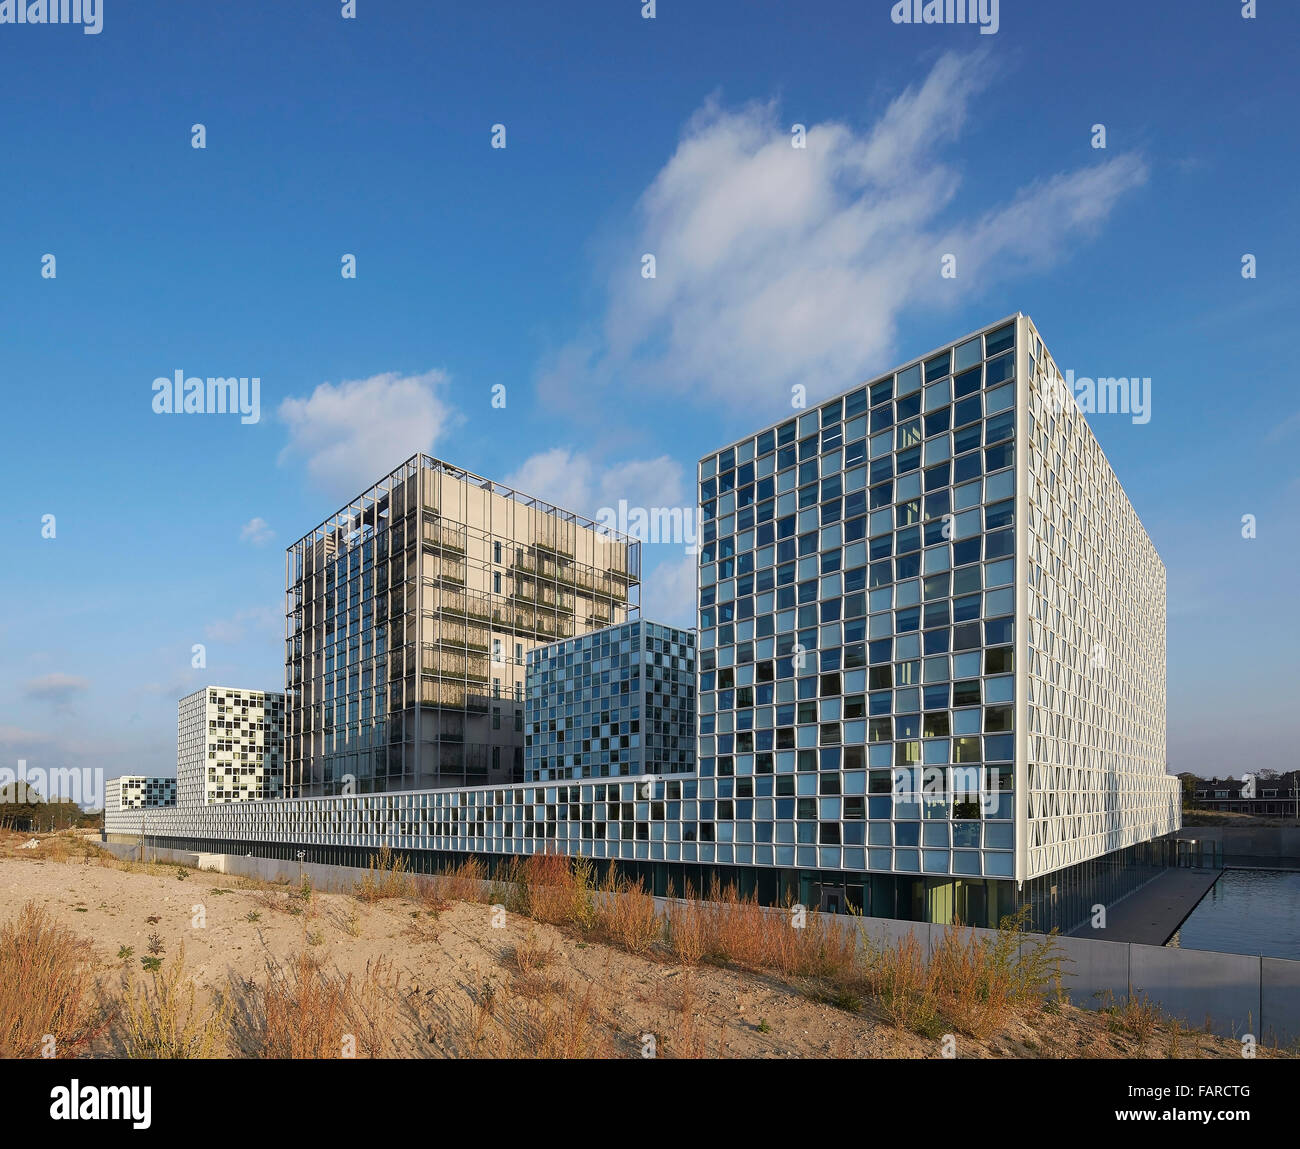 Gericht Turm und Bürogebäuden in der Perspektive. Internationaler Strafgerichtshof (IStGH) Den Haag, Den Haag, Niederlande. Architekt: Stockfoto